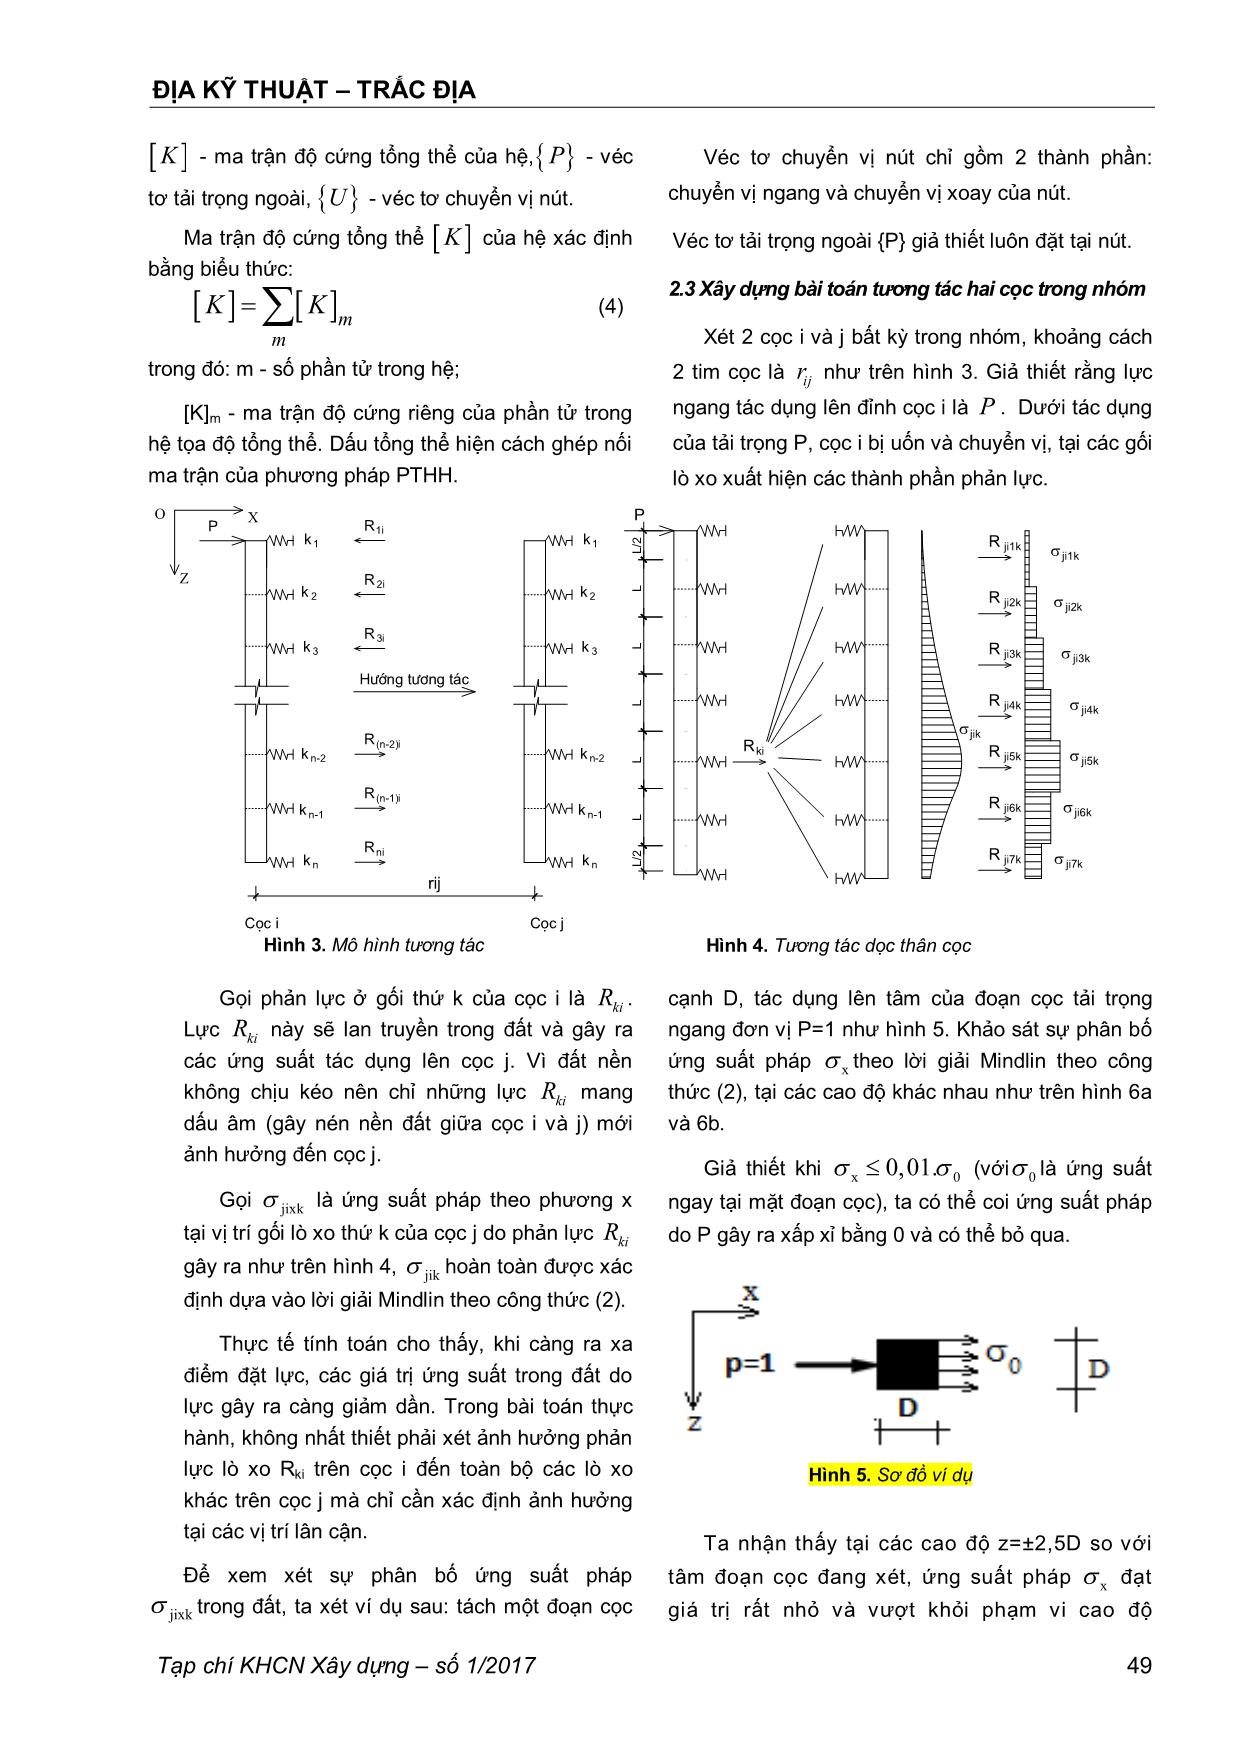 Phân tích hiệu ứng nhóm của móng cọc chịu tải trọng ngang bằng lời giải Mindlin trang 3